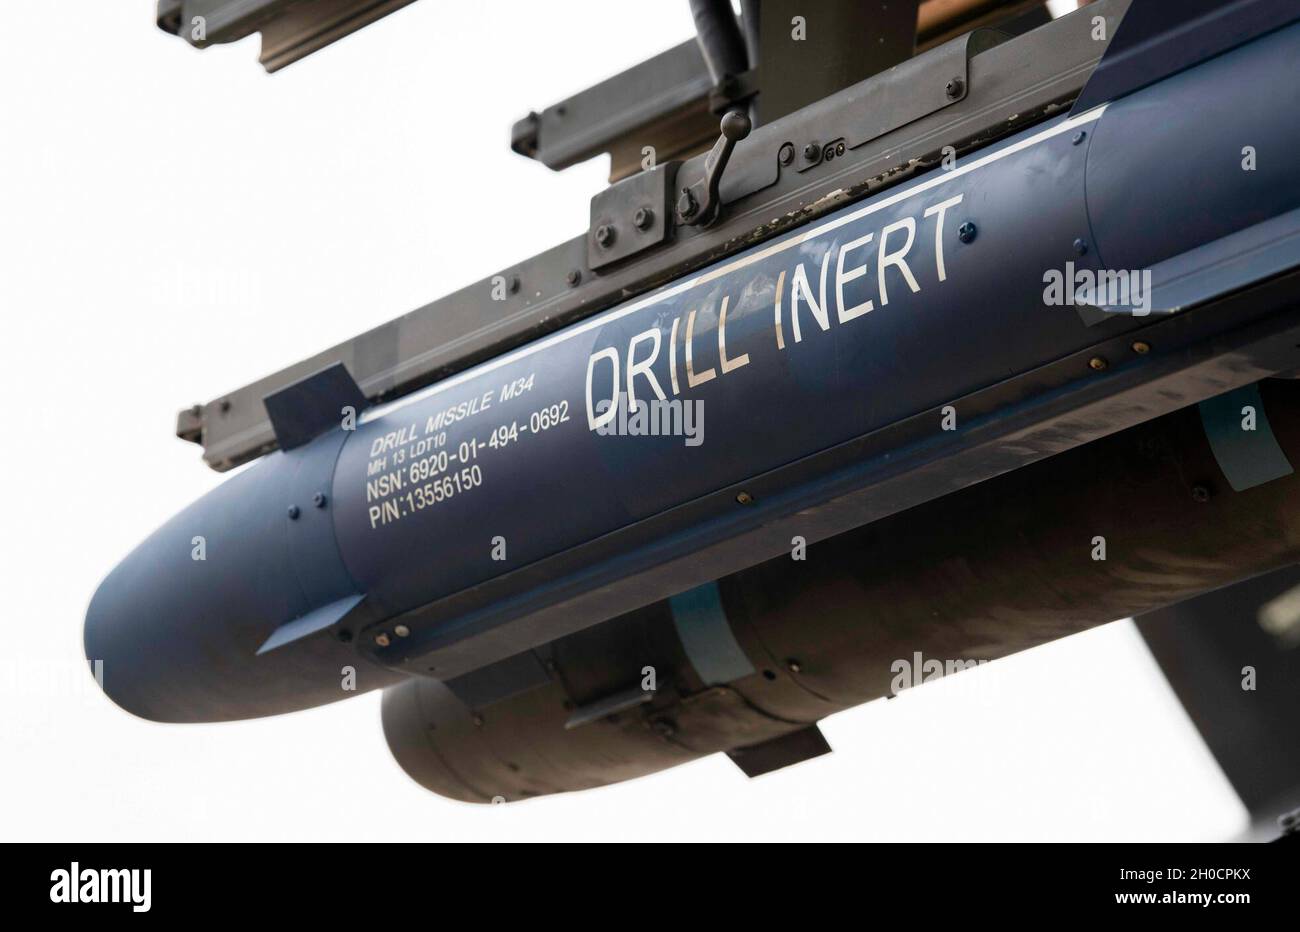 Un misil AGM-114 Hellfire se carga durante una competencia de tripulación de carga en Hurlburt Field, Florida, 25 de enero de 2021. El objetivo de la competición era garantizar que todos los equipos de carga se puedan desplegar y estén preparados para la misión, al tiempo que recompensaban lo mejor de lo mejor por su duro trabajo. Foto de stock